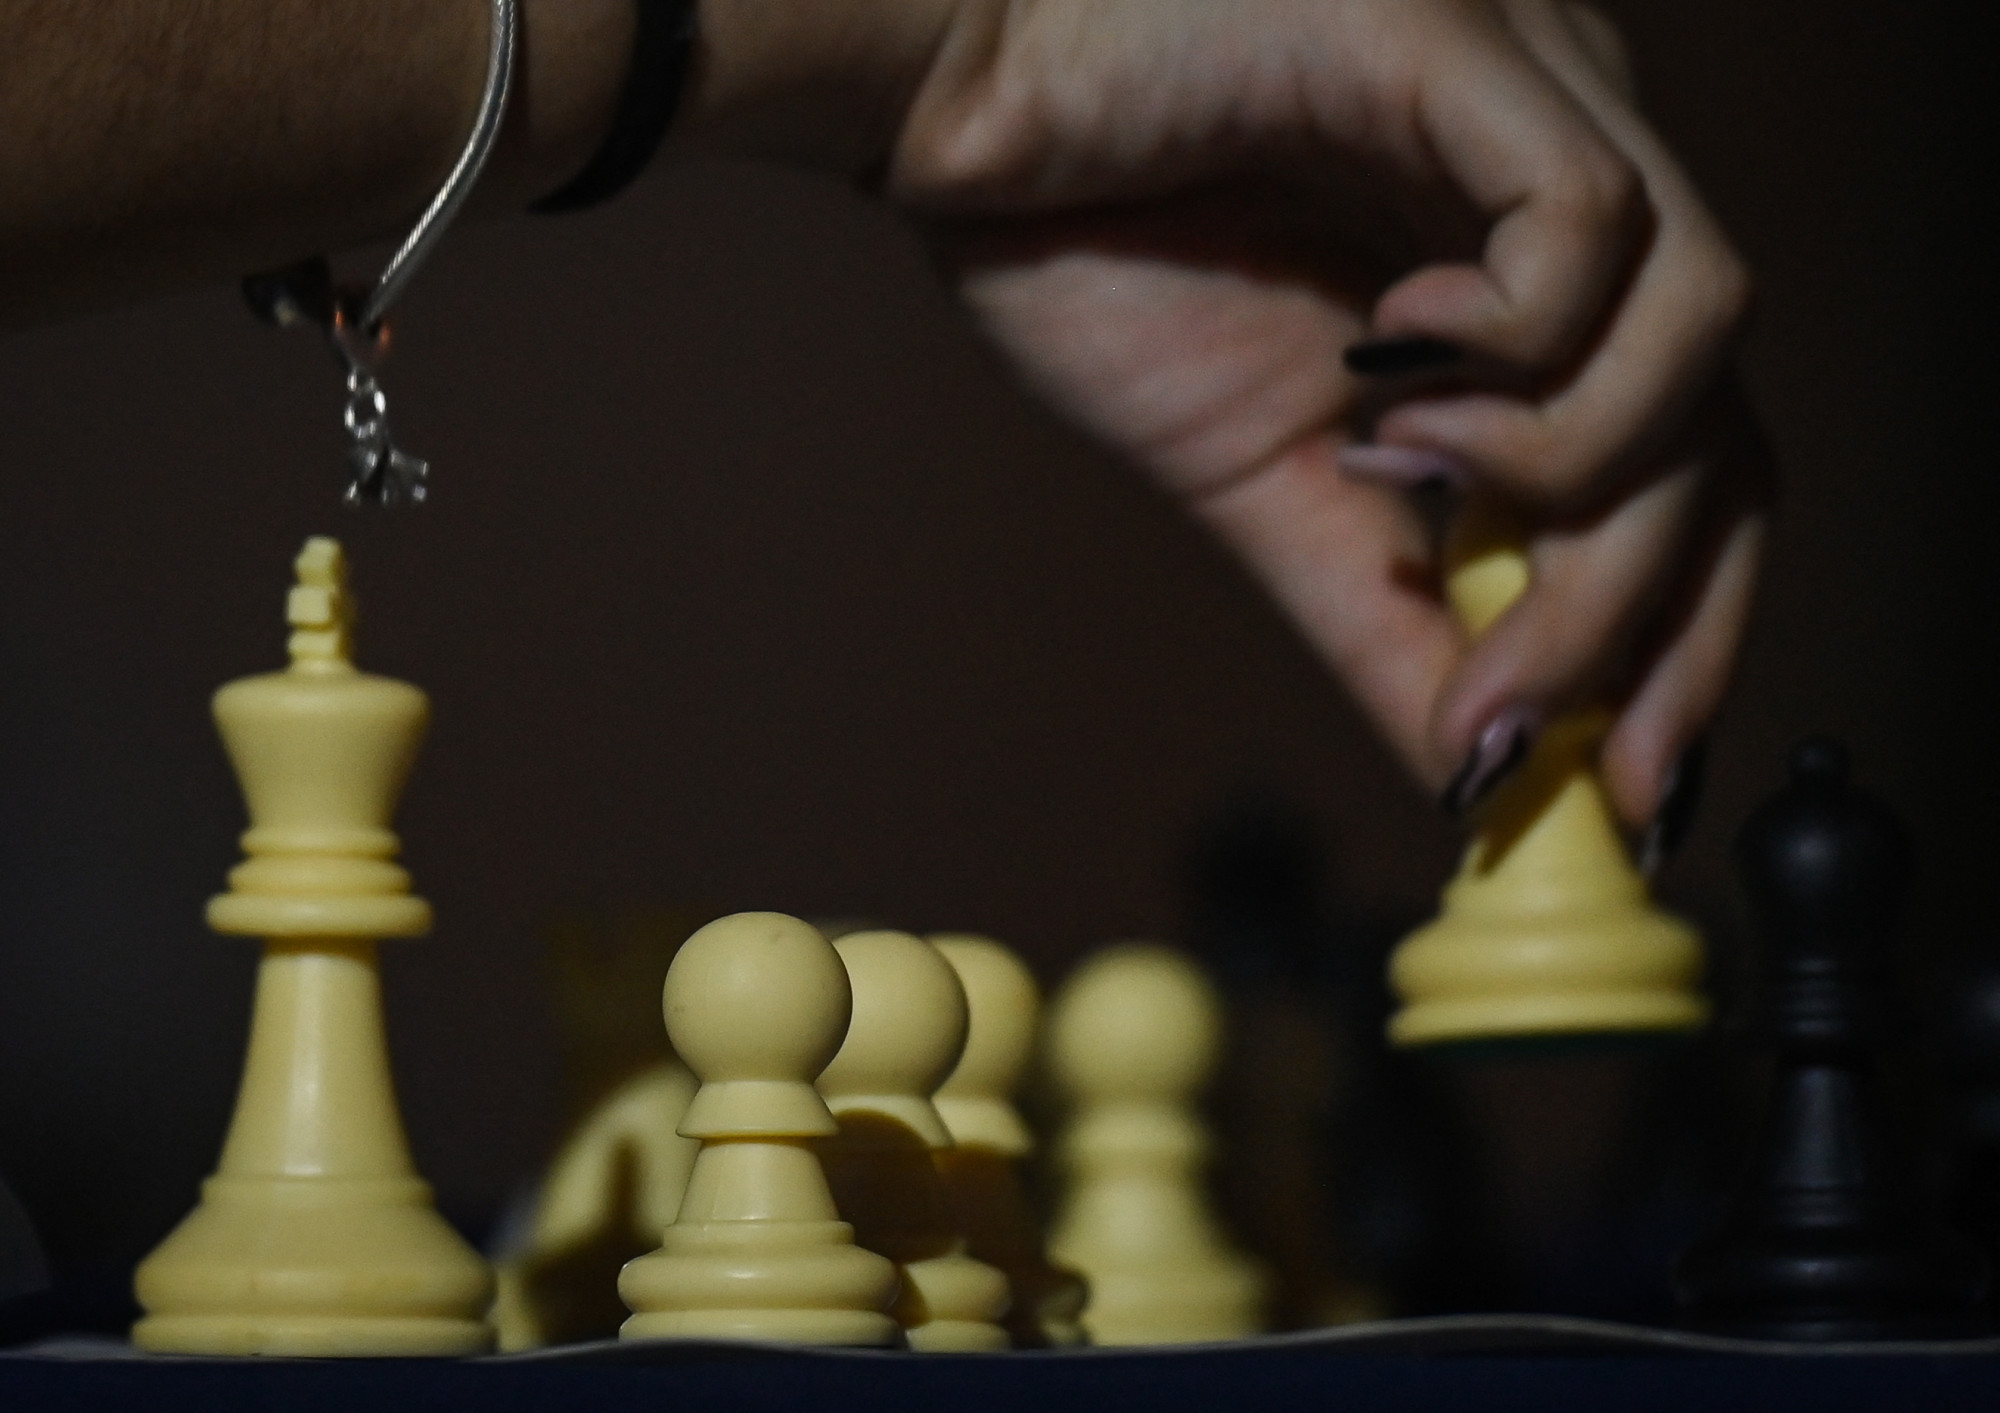 Két évre kitiltották a transznőket a női sakkversenyekről